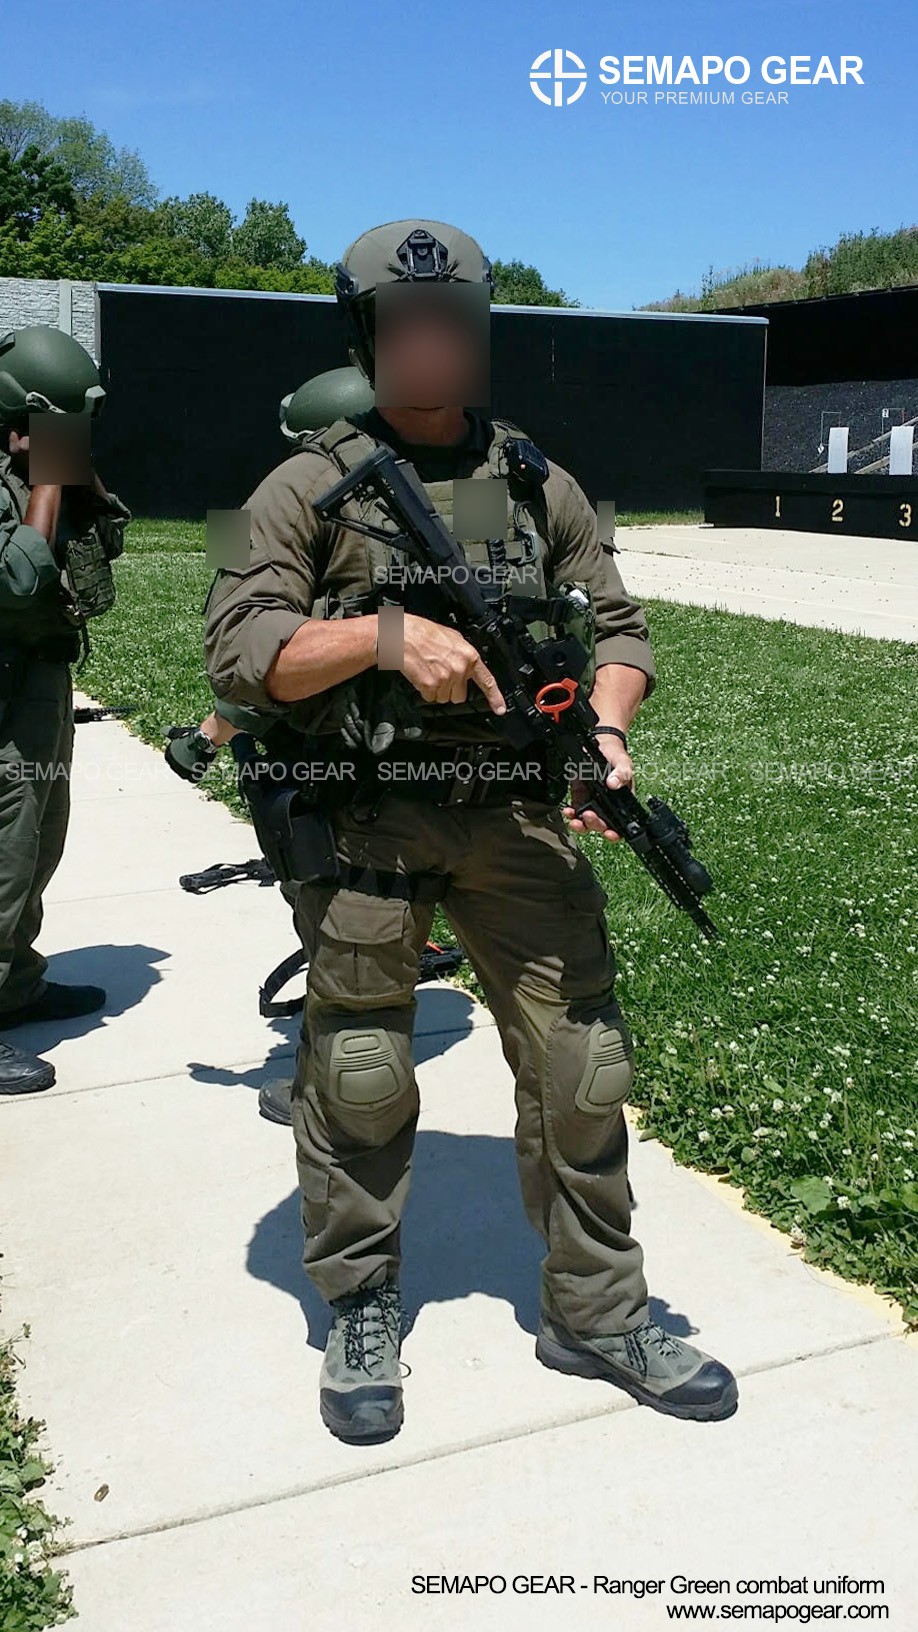 Product : [Ranger Green] 3D combat uniform shirts